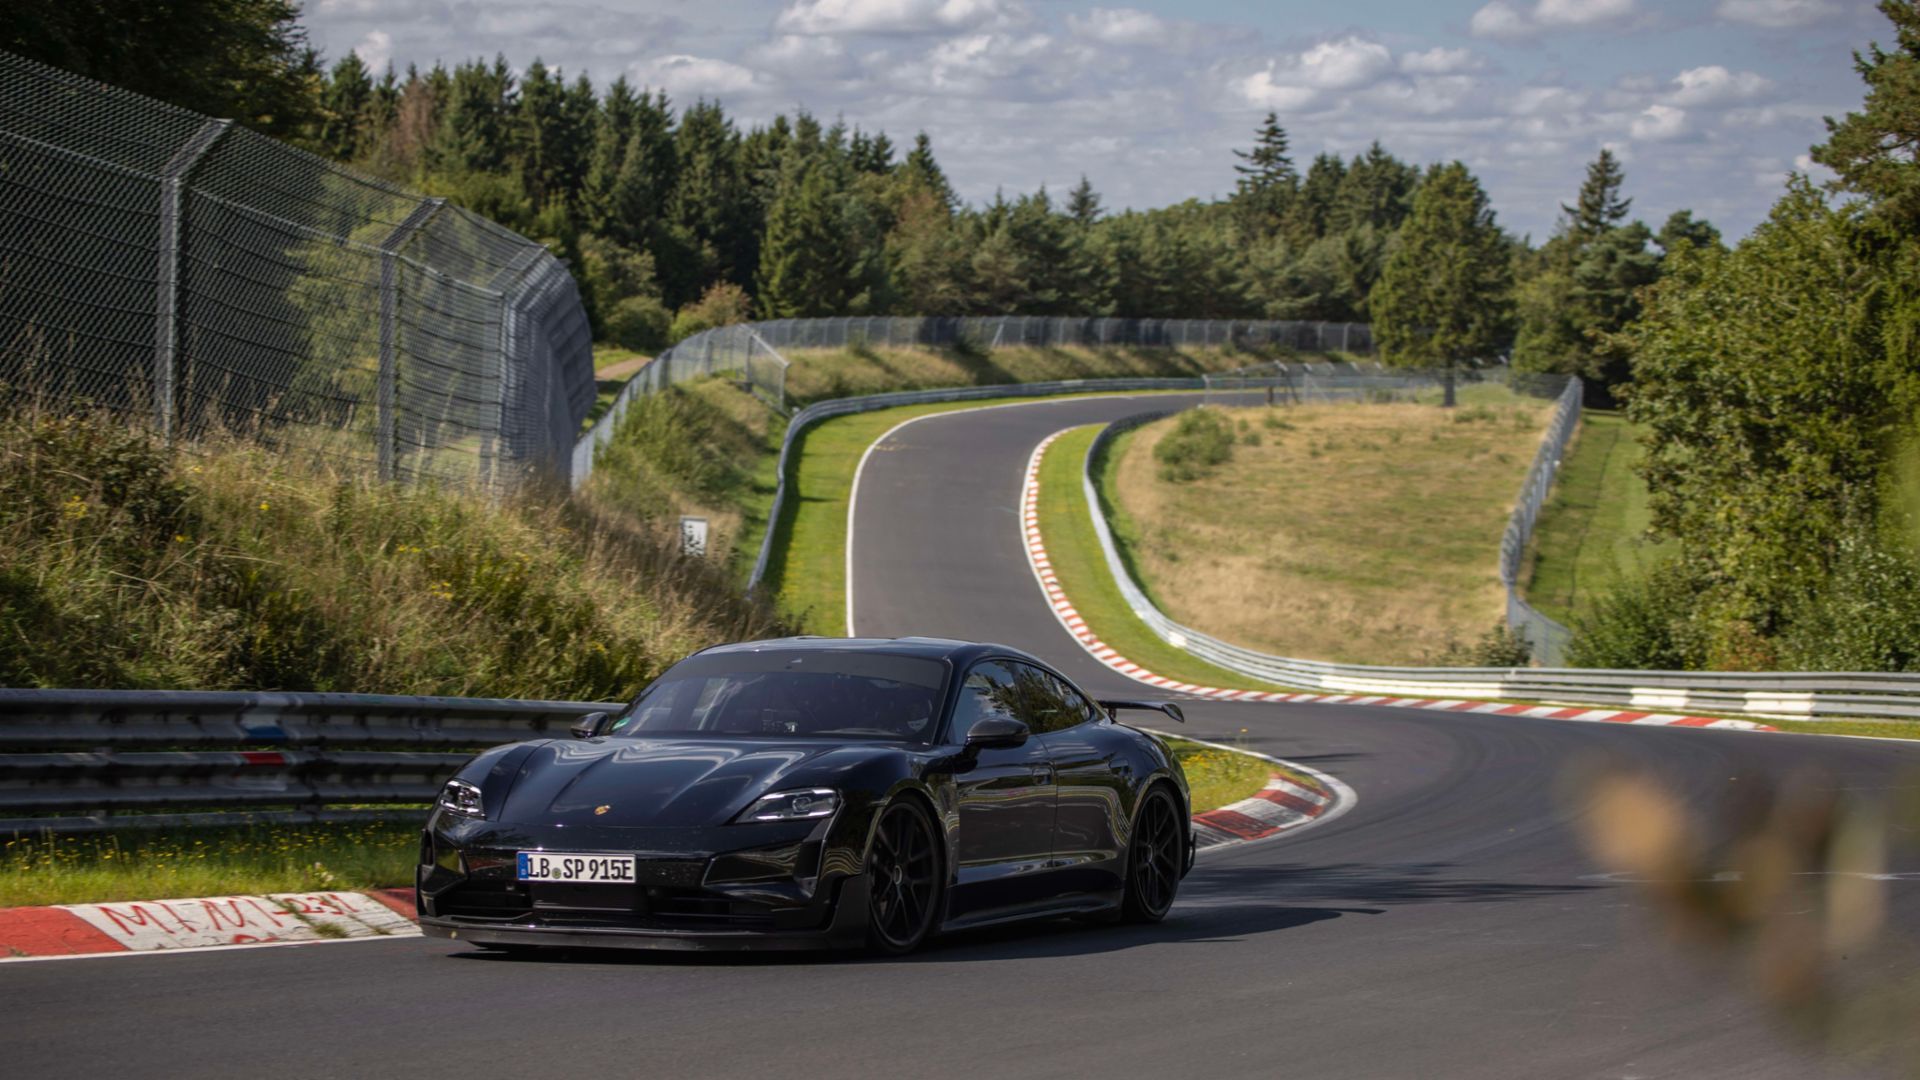 18 sekunder snabbare än Tesla Model S Plaid: Porsche testade den elektriska sportbilen Taycan Turbo GT på Nürburgring